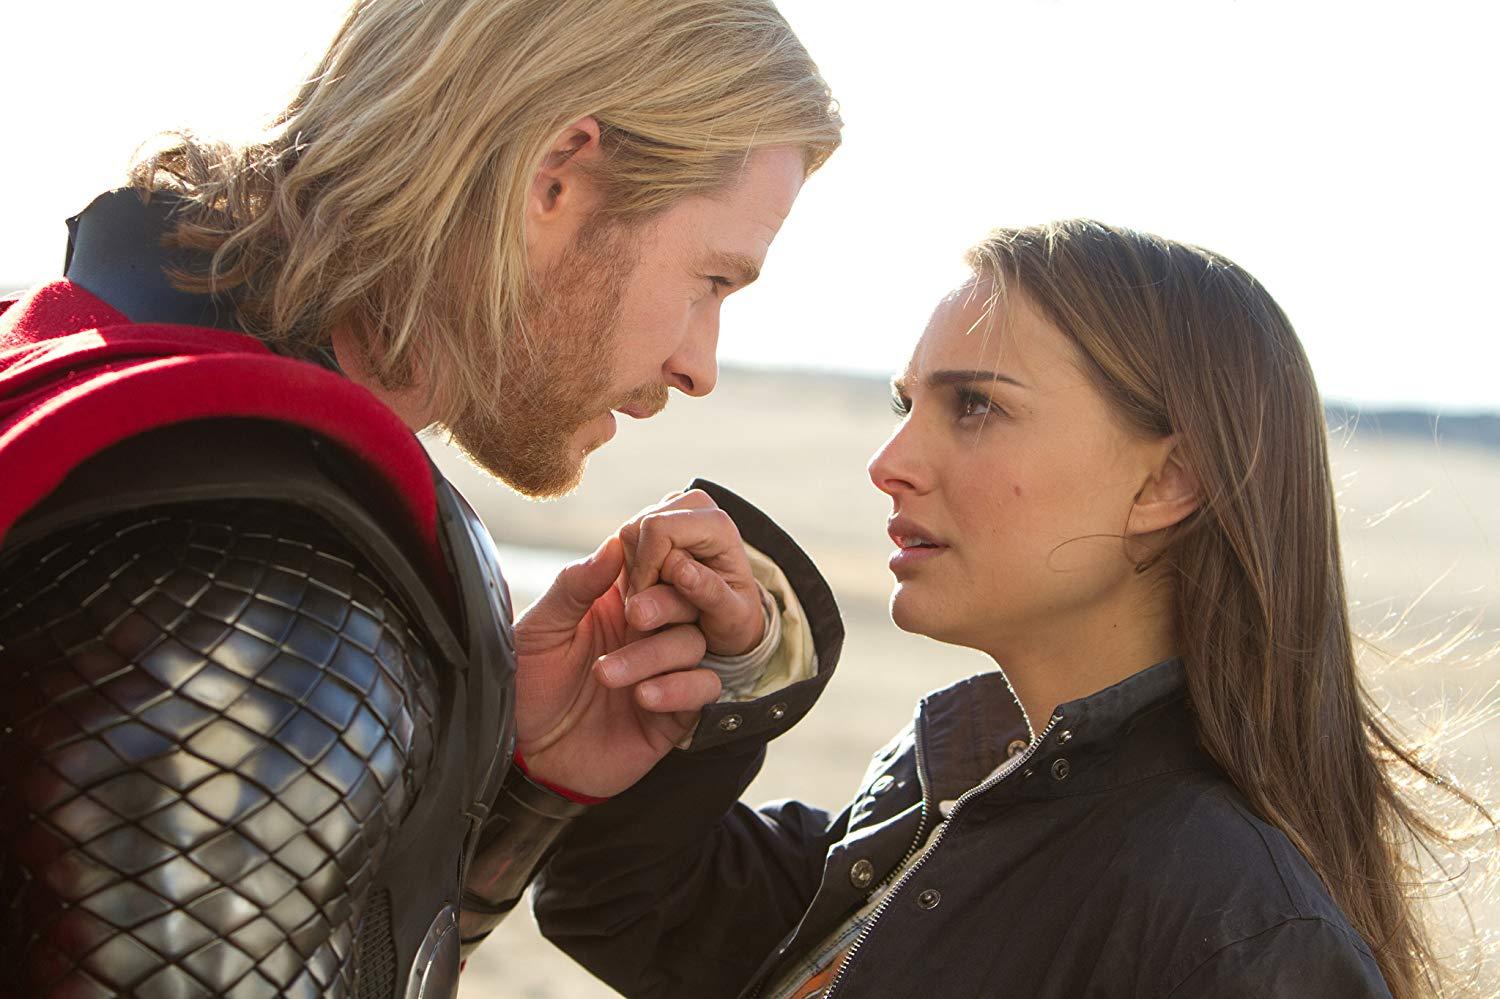 น่าดูมาก! นาตาลี พอร์ตแมน คัมแบ็กเป็นเทพเจ้าสายฟ้าเวอร์ชั่นผู้หญิงใน Thor: Love and Thunder